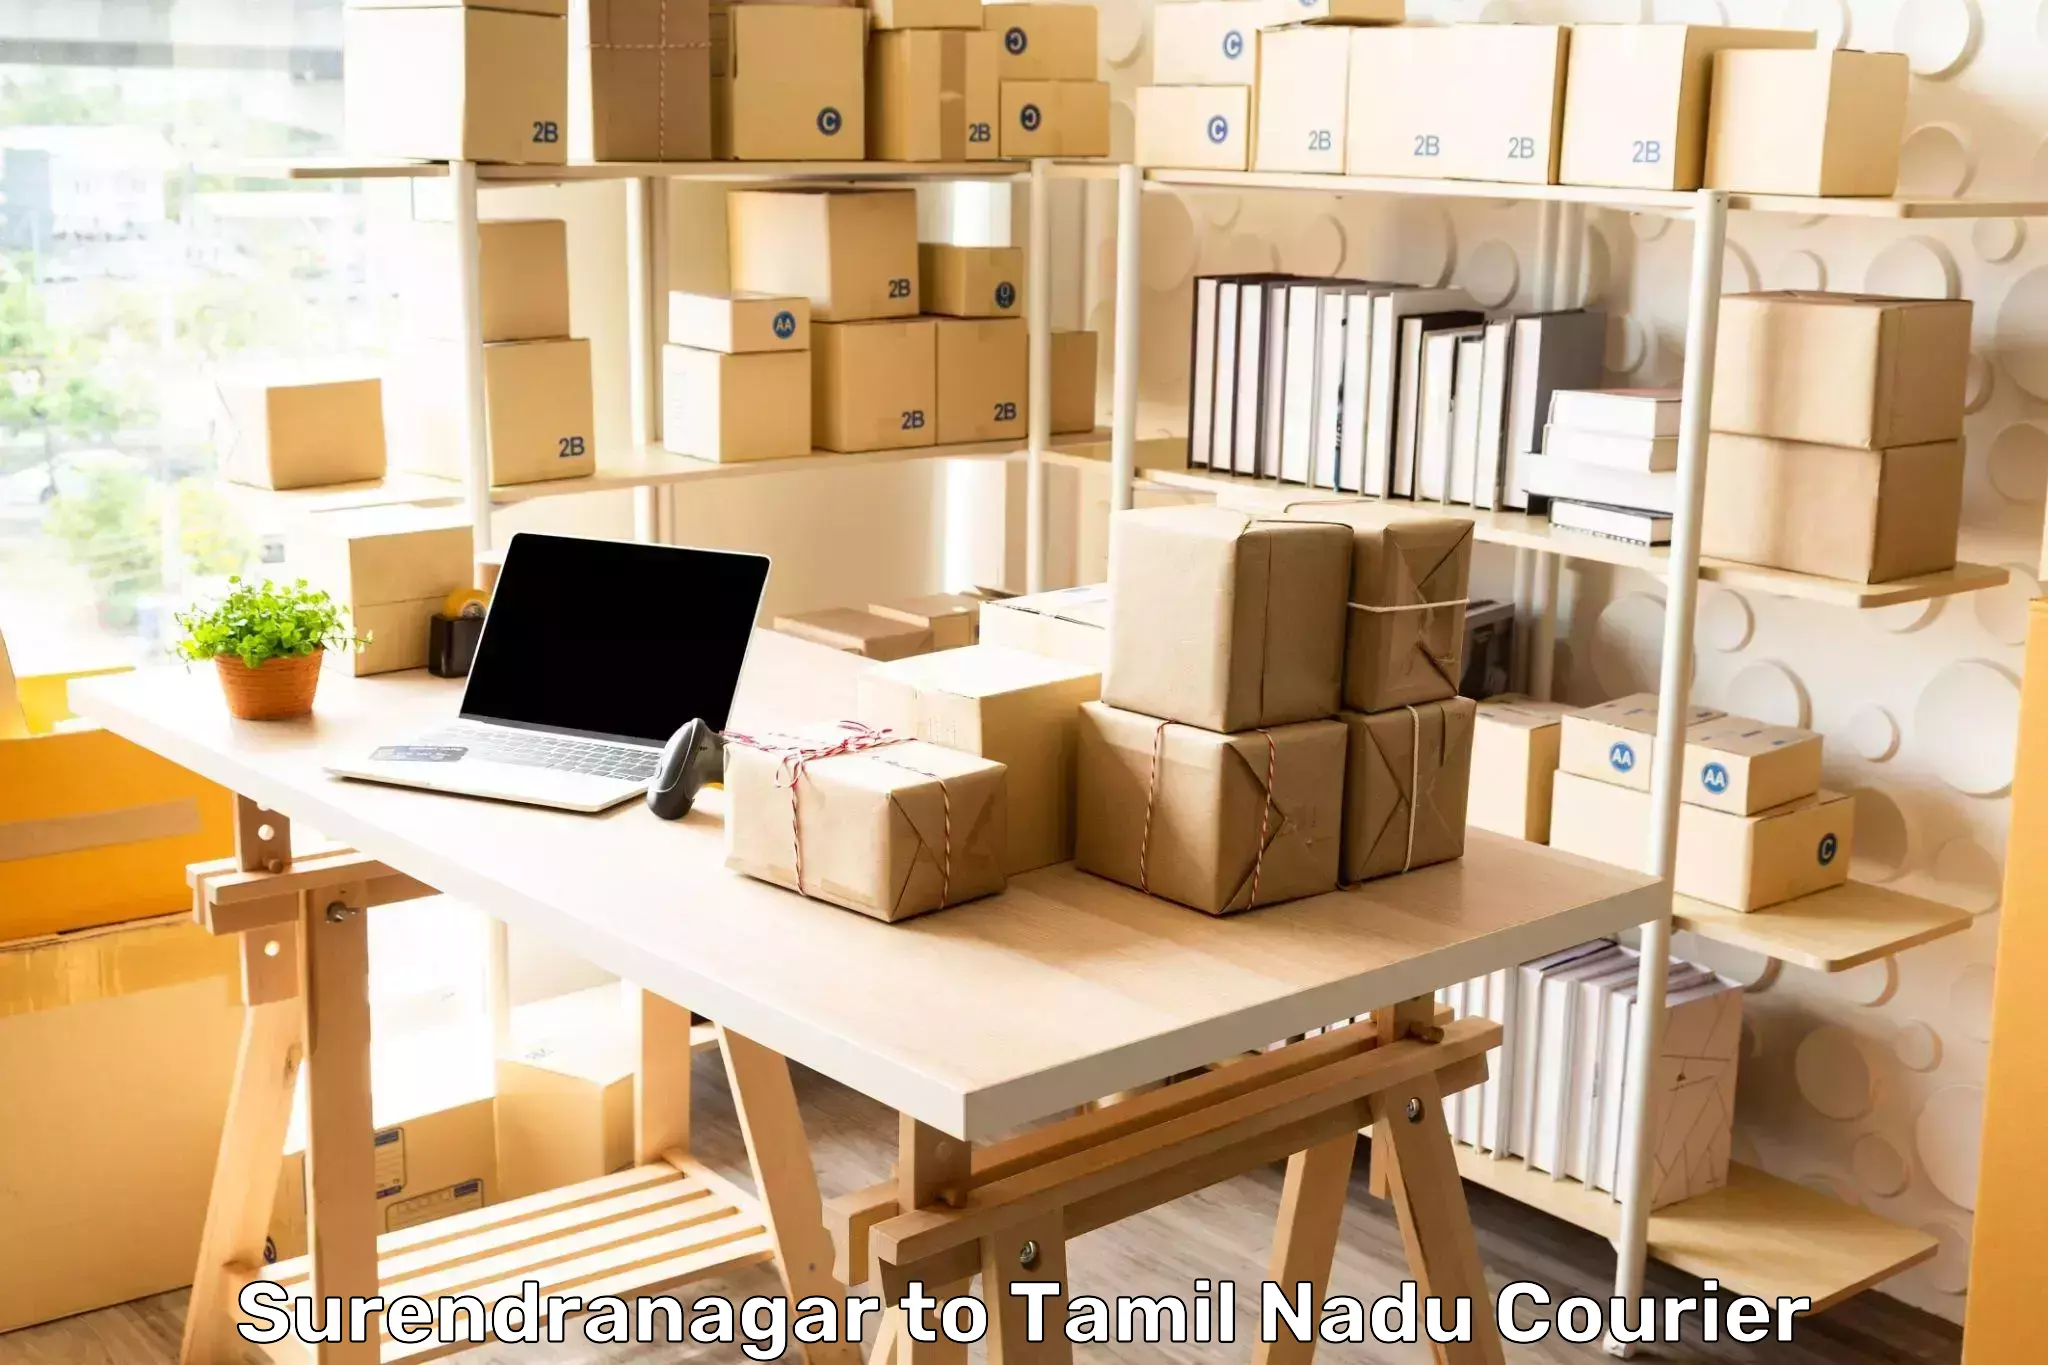 Online shipping calculator Surendranagar to Tamil Nadu